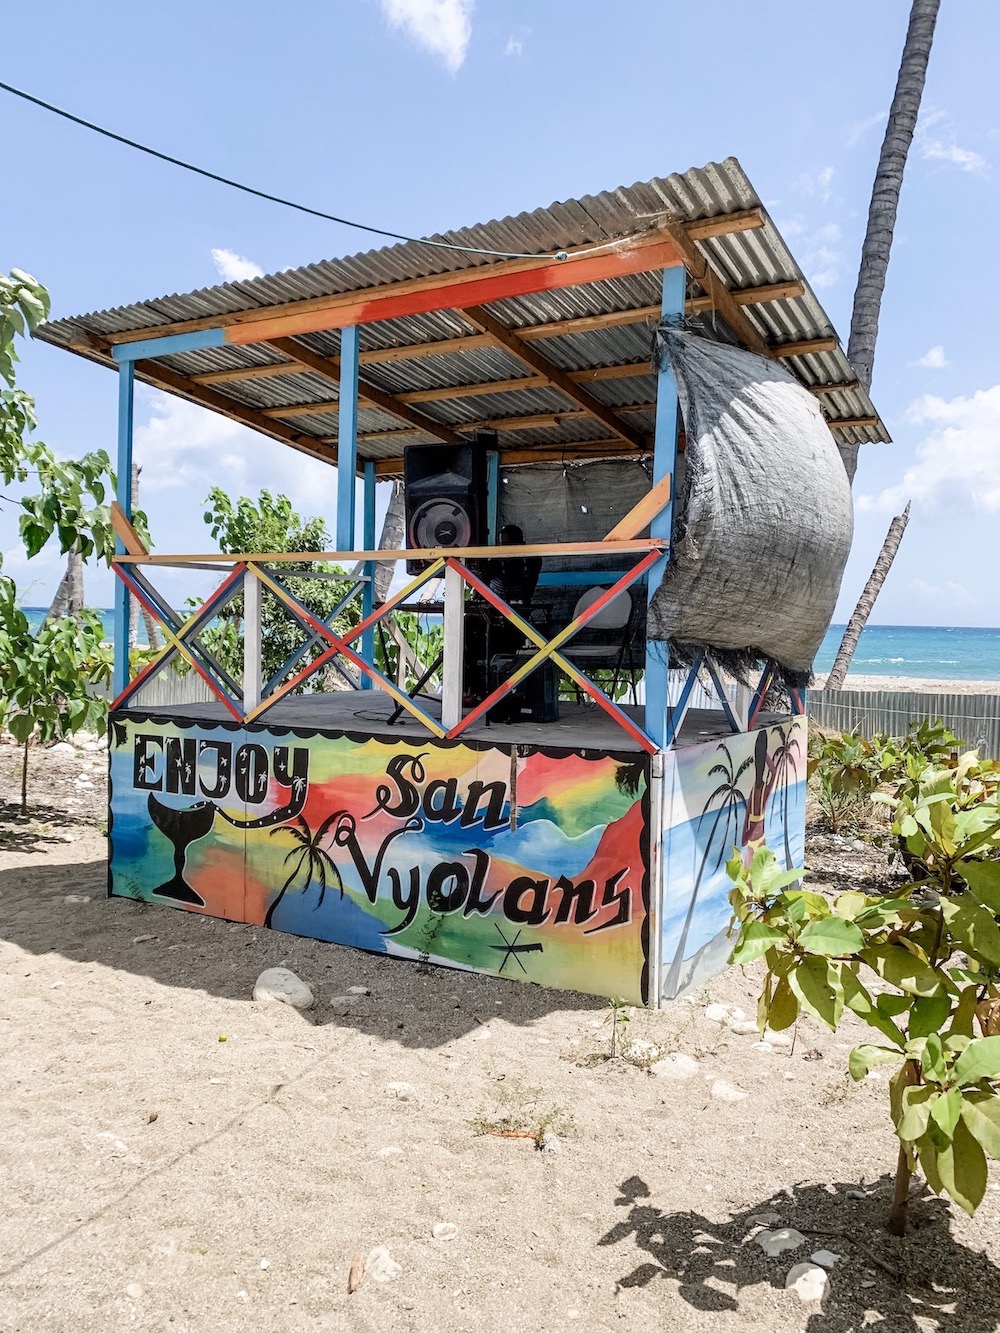 DJ setup in Haiti